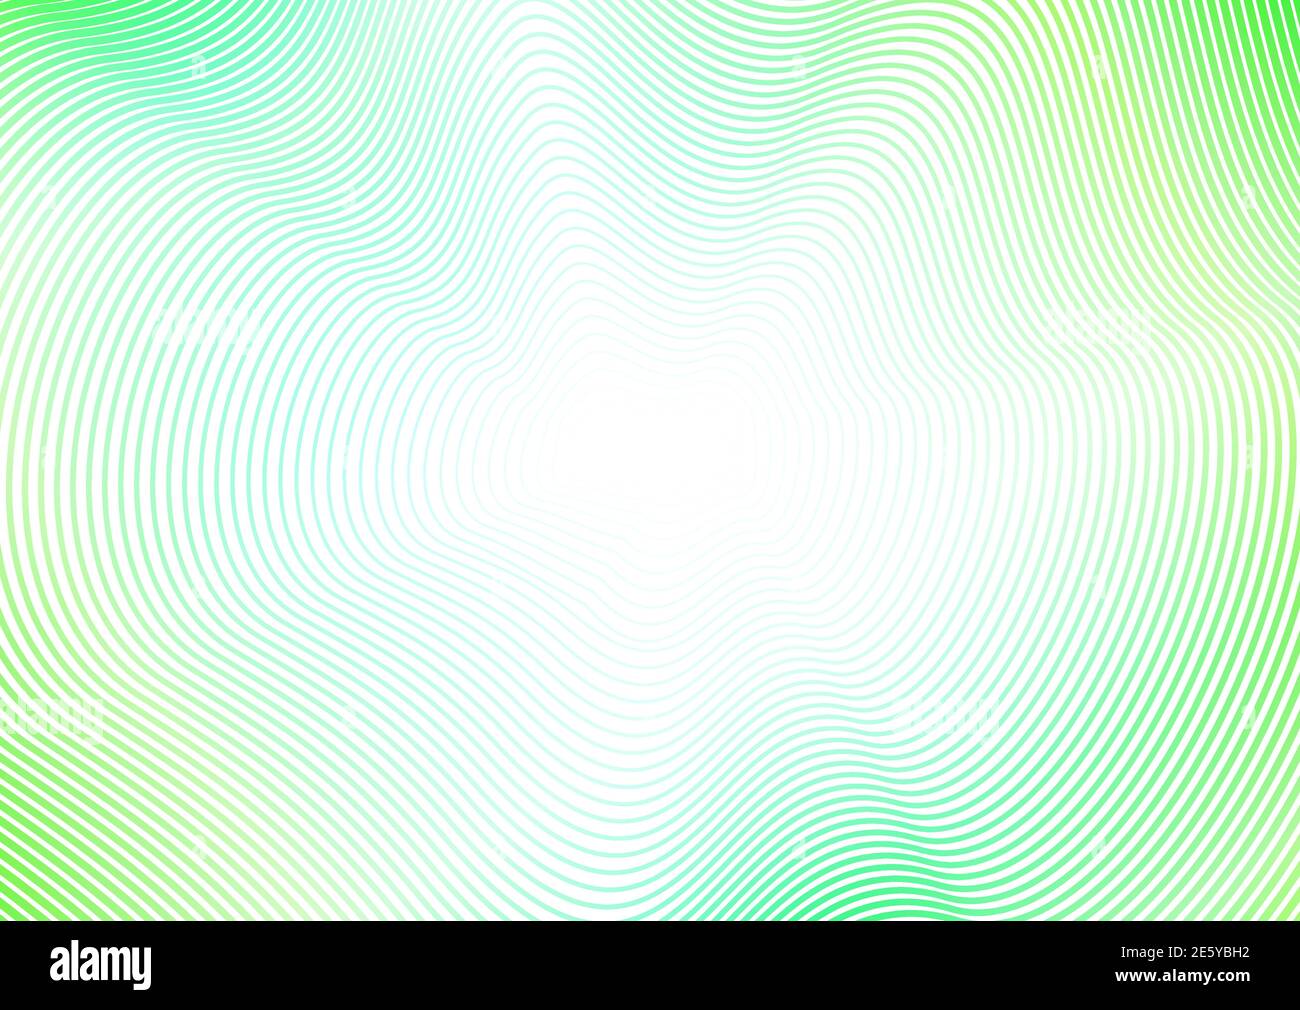 Abstrakter Hintergrund mit Flash-Effekt. Hellgrüne Wellen, Strichmuster. Design Konzept der Perspektive. Vektorfarbener Rahmen, dünne Kurven. EPS10 Stock Vektor